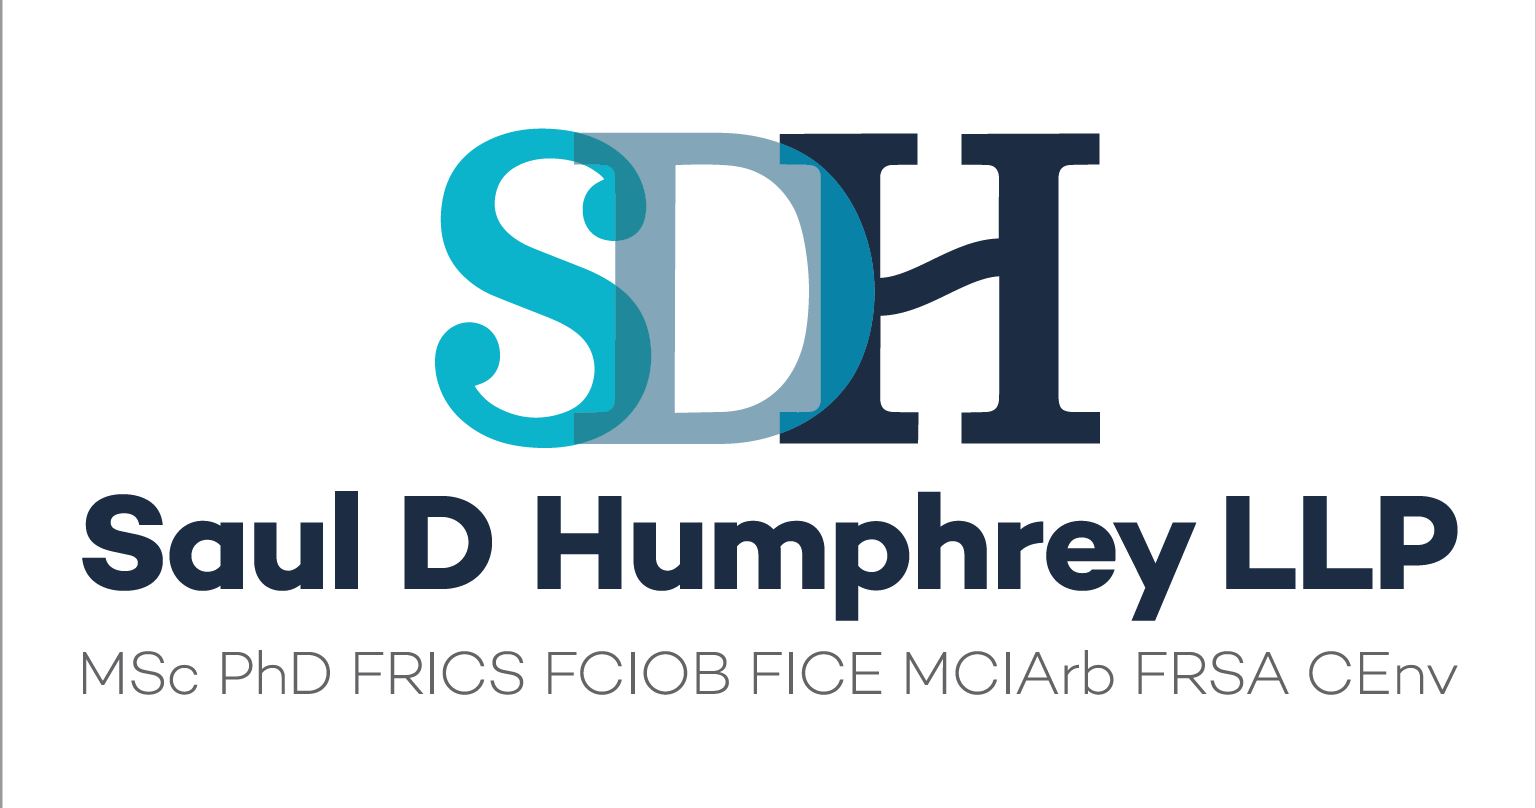 Saul D Humphrey LLP